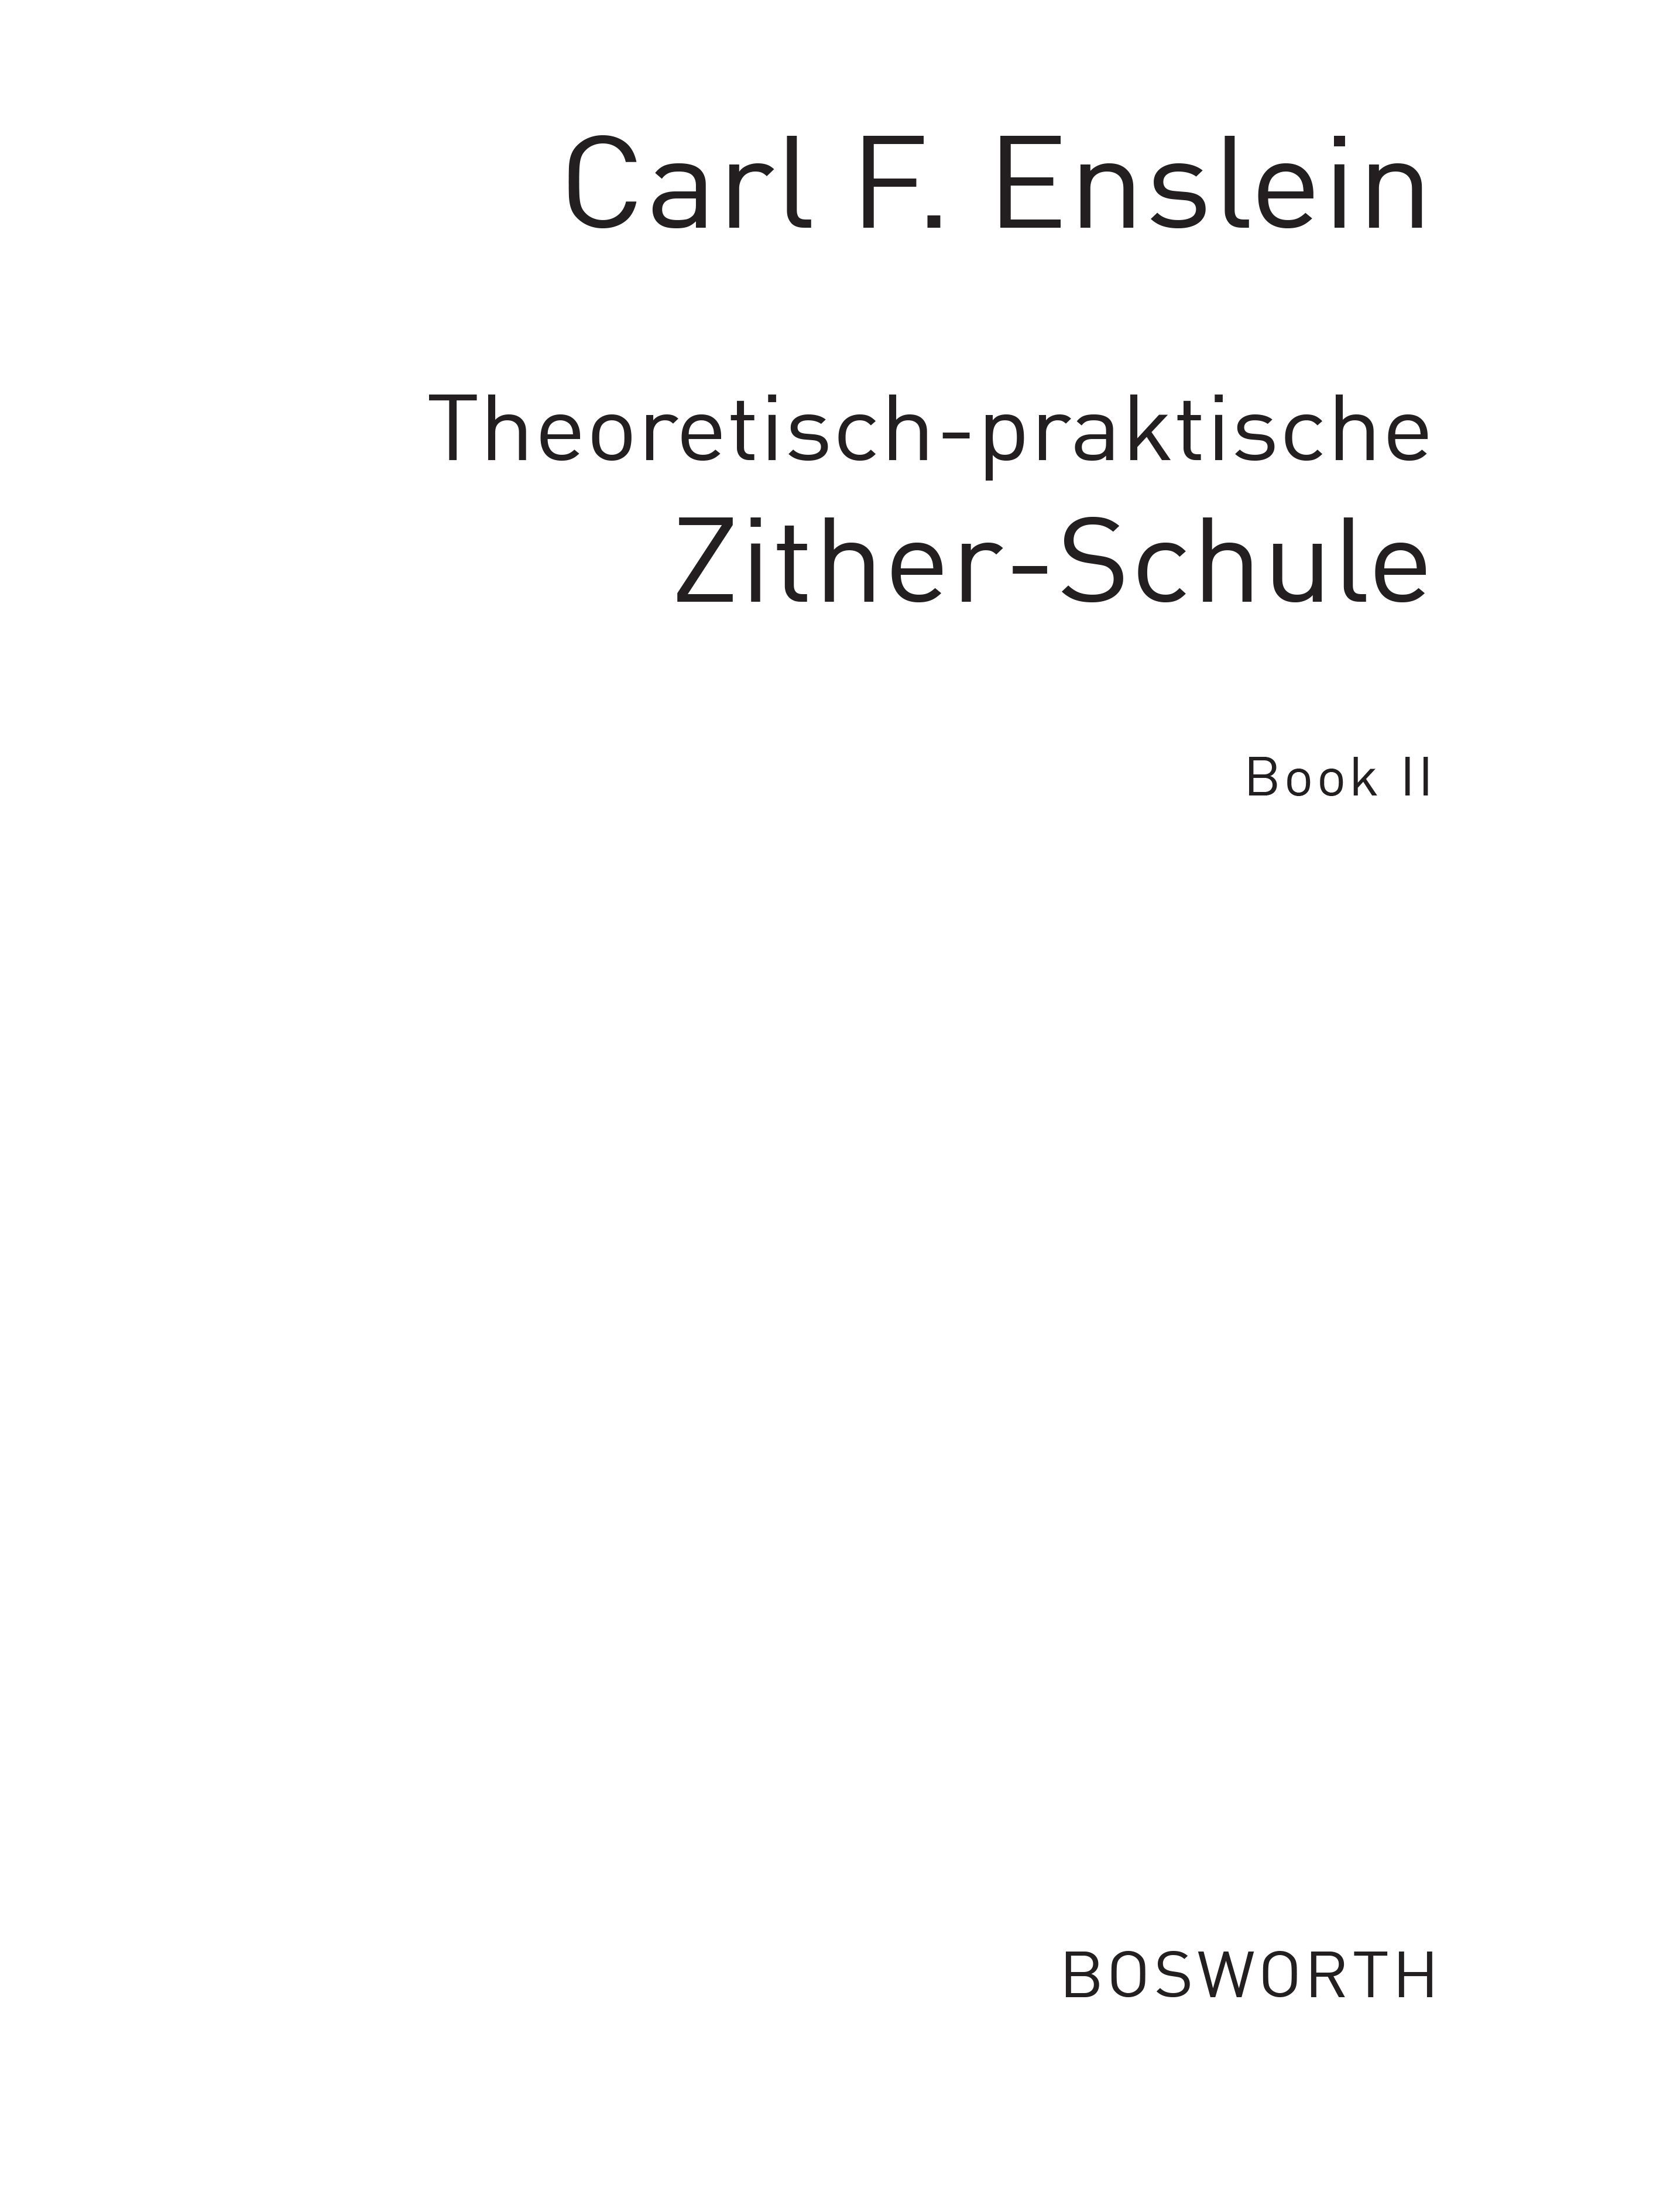 Theoretisch-praktische Zither-schule Bk2: Percussion